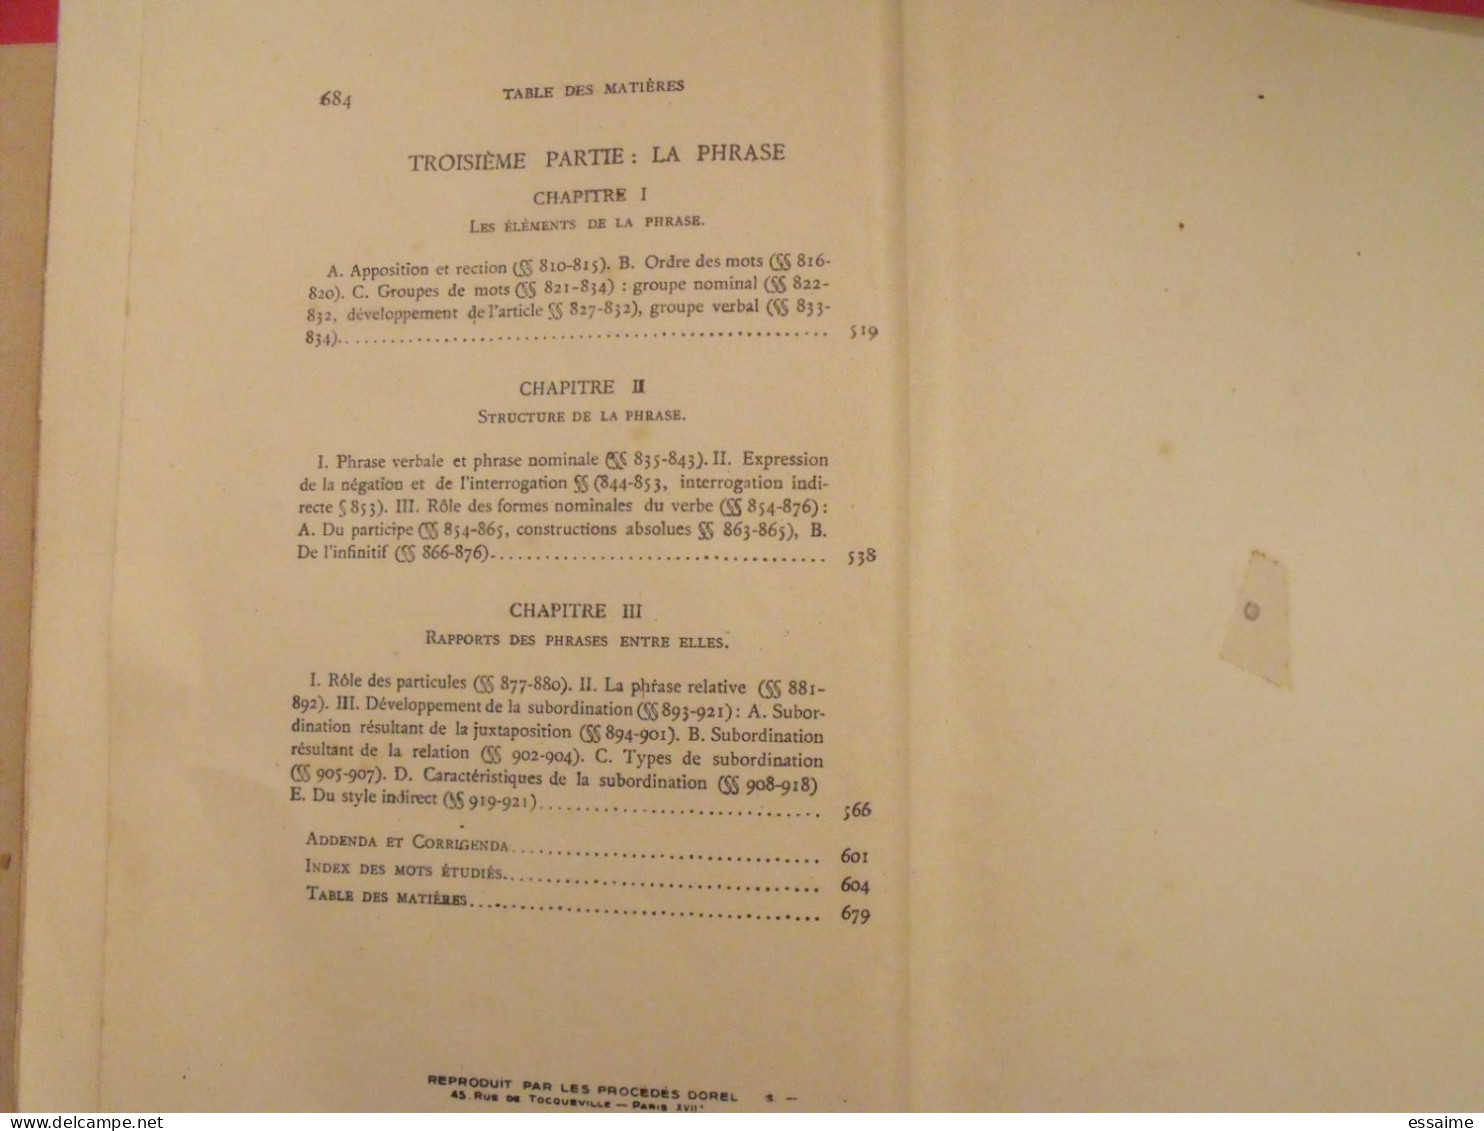 traité de grammaire comparée des langues classiques. Meillet, Vendryes. Honoré Champion 1927